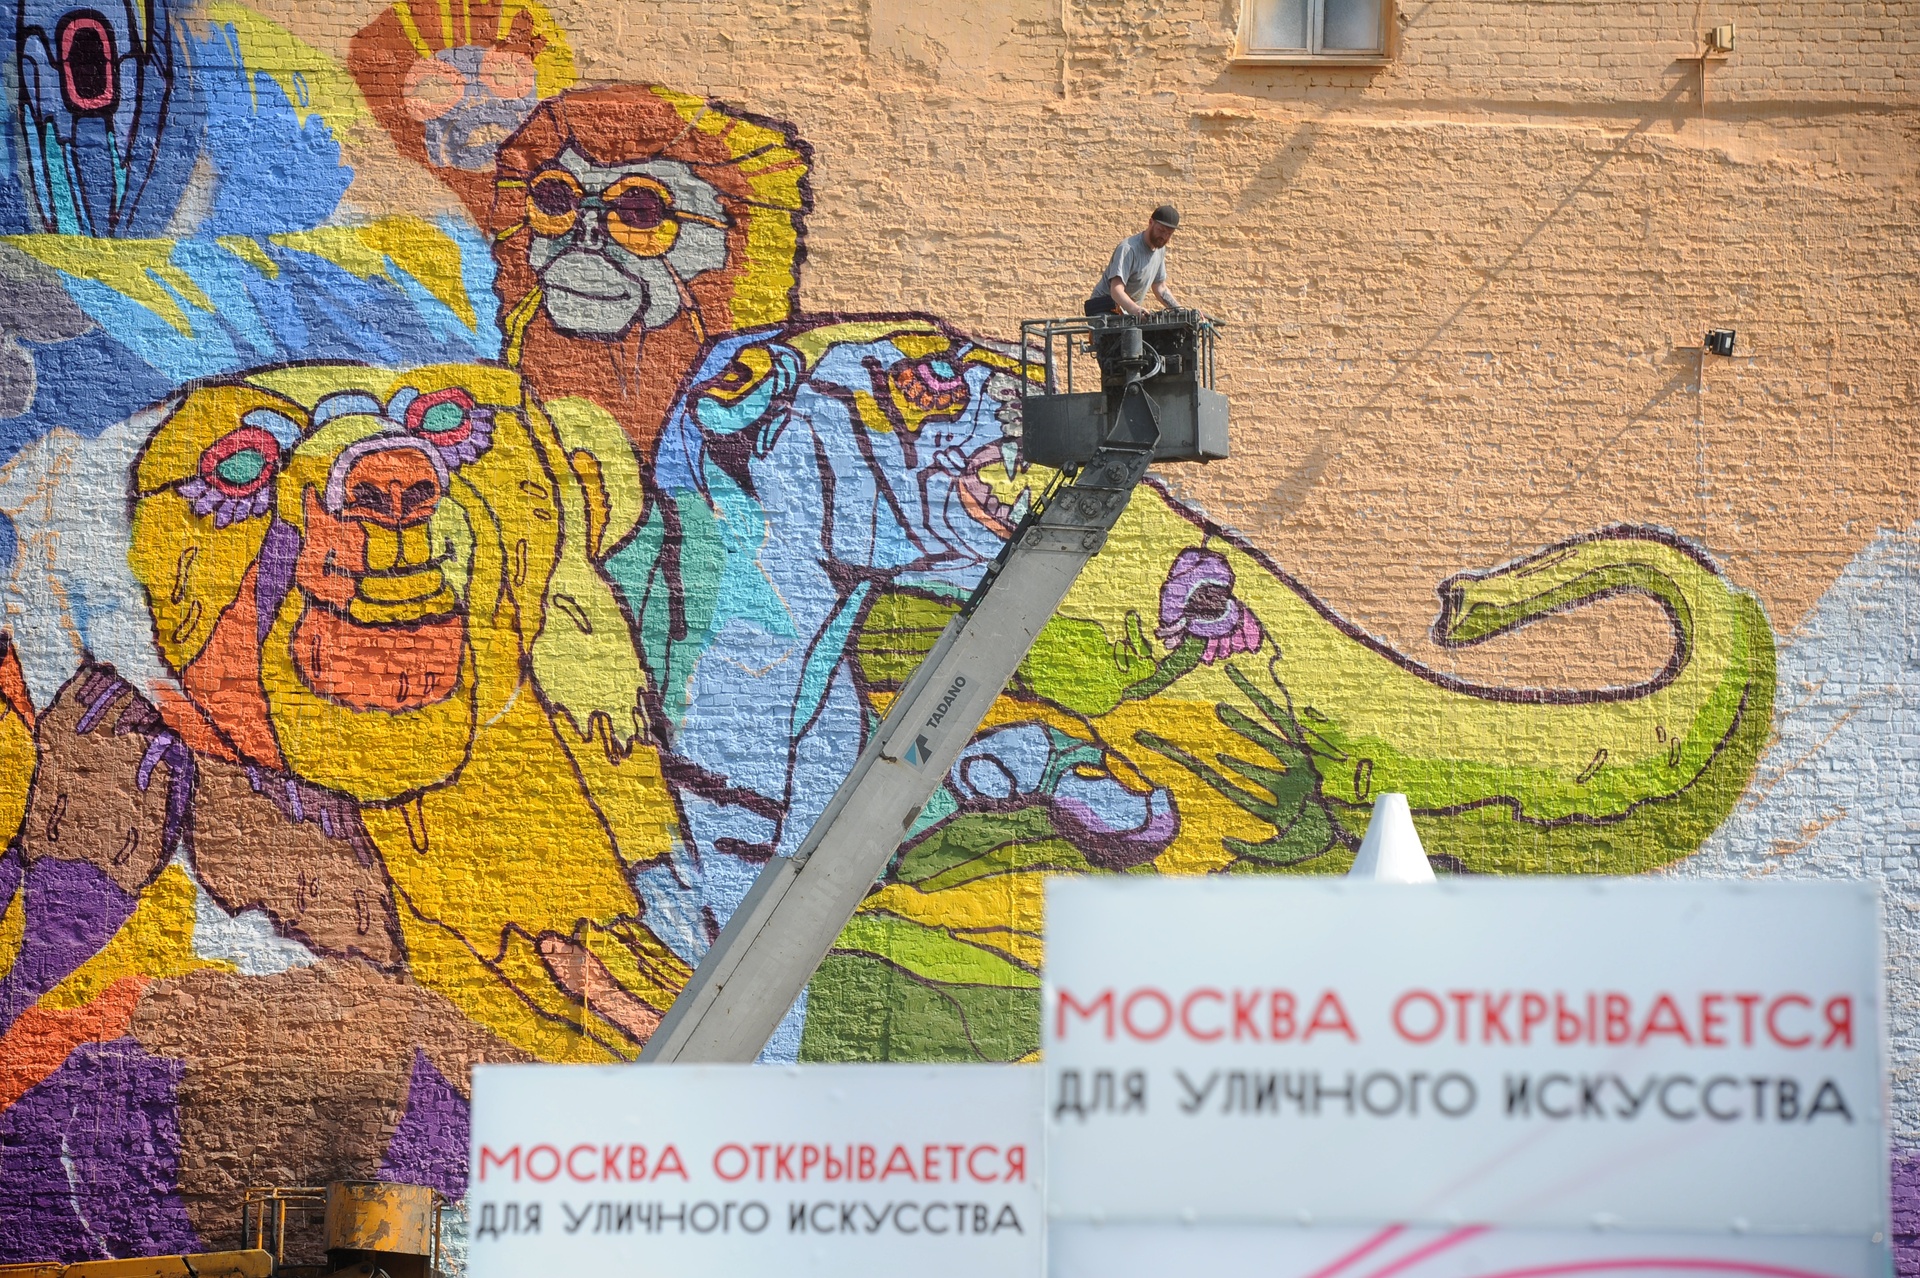 Украшение здания на улице Трубной,15 граффити площадью 180 квадратных метров "Цирк" райтера Алексея Медного в рамках фестиваля "Лучший город земли" в Москве.